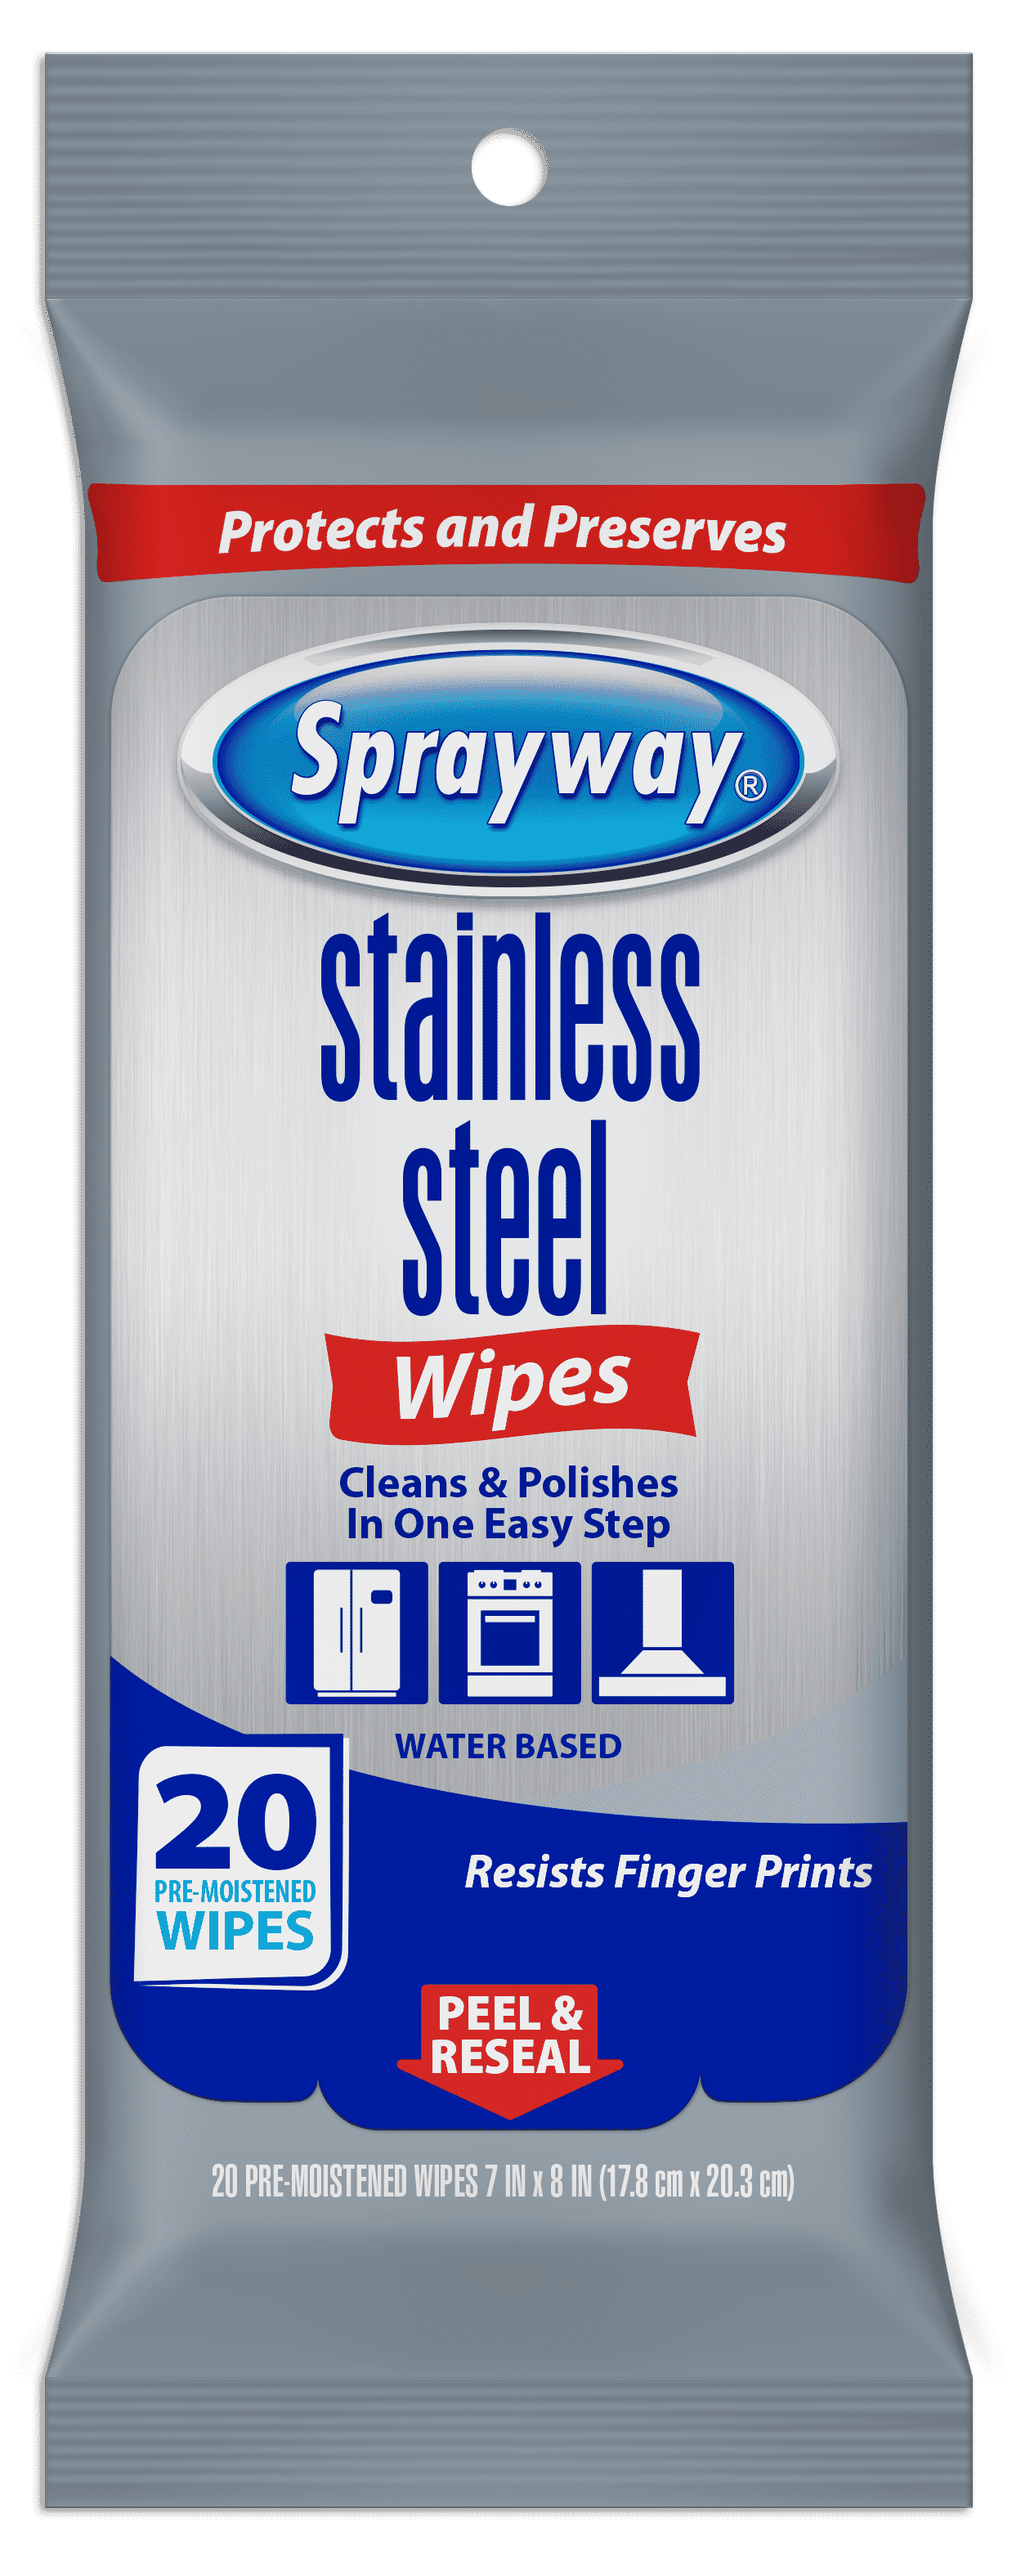 Sprayway Stainless Steel Wipes (Water-Based)